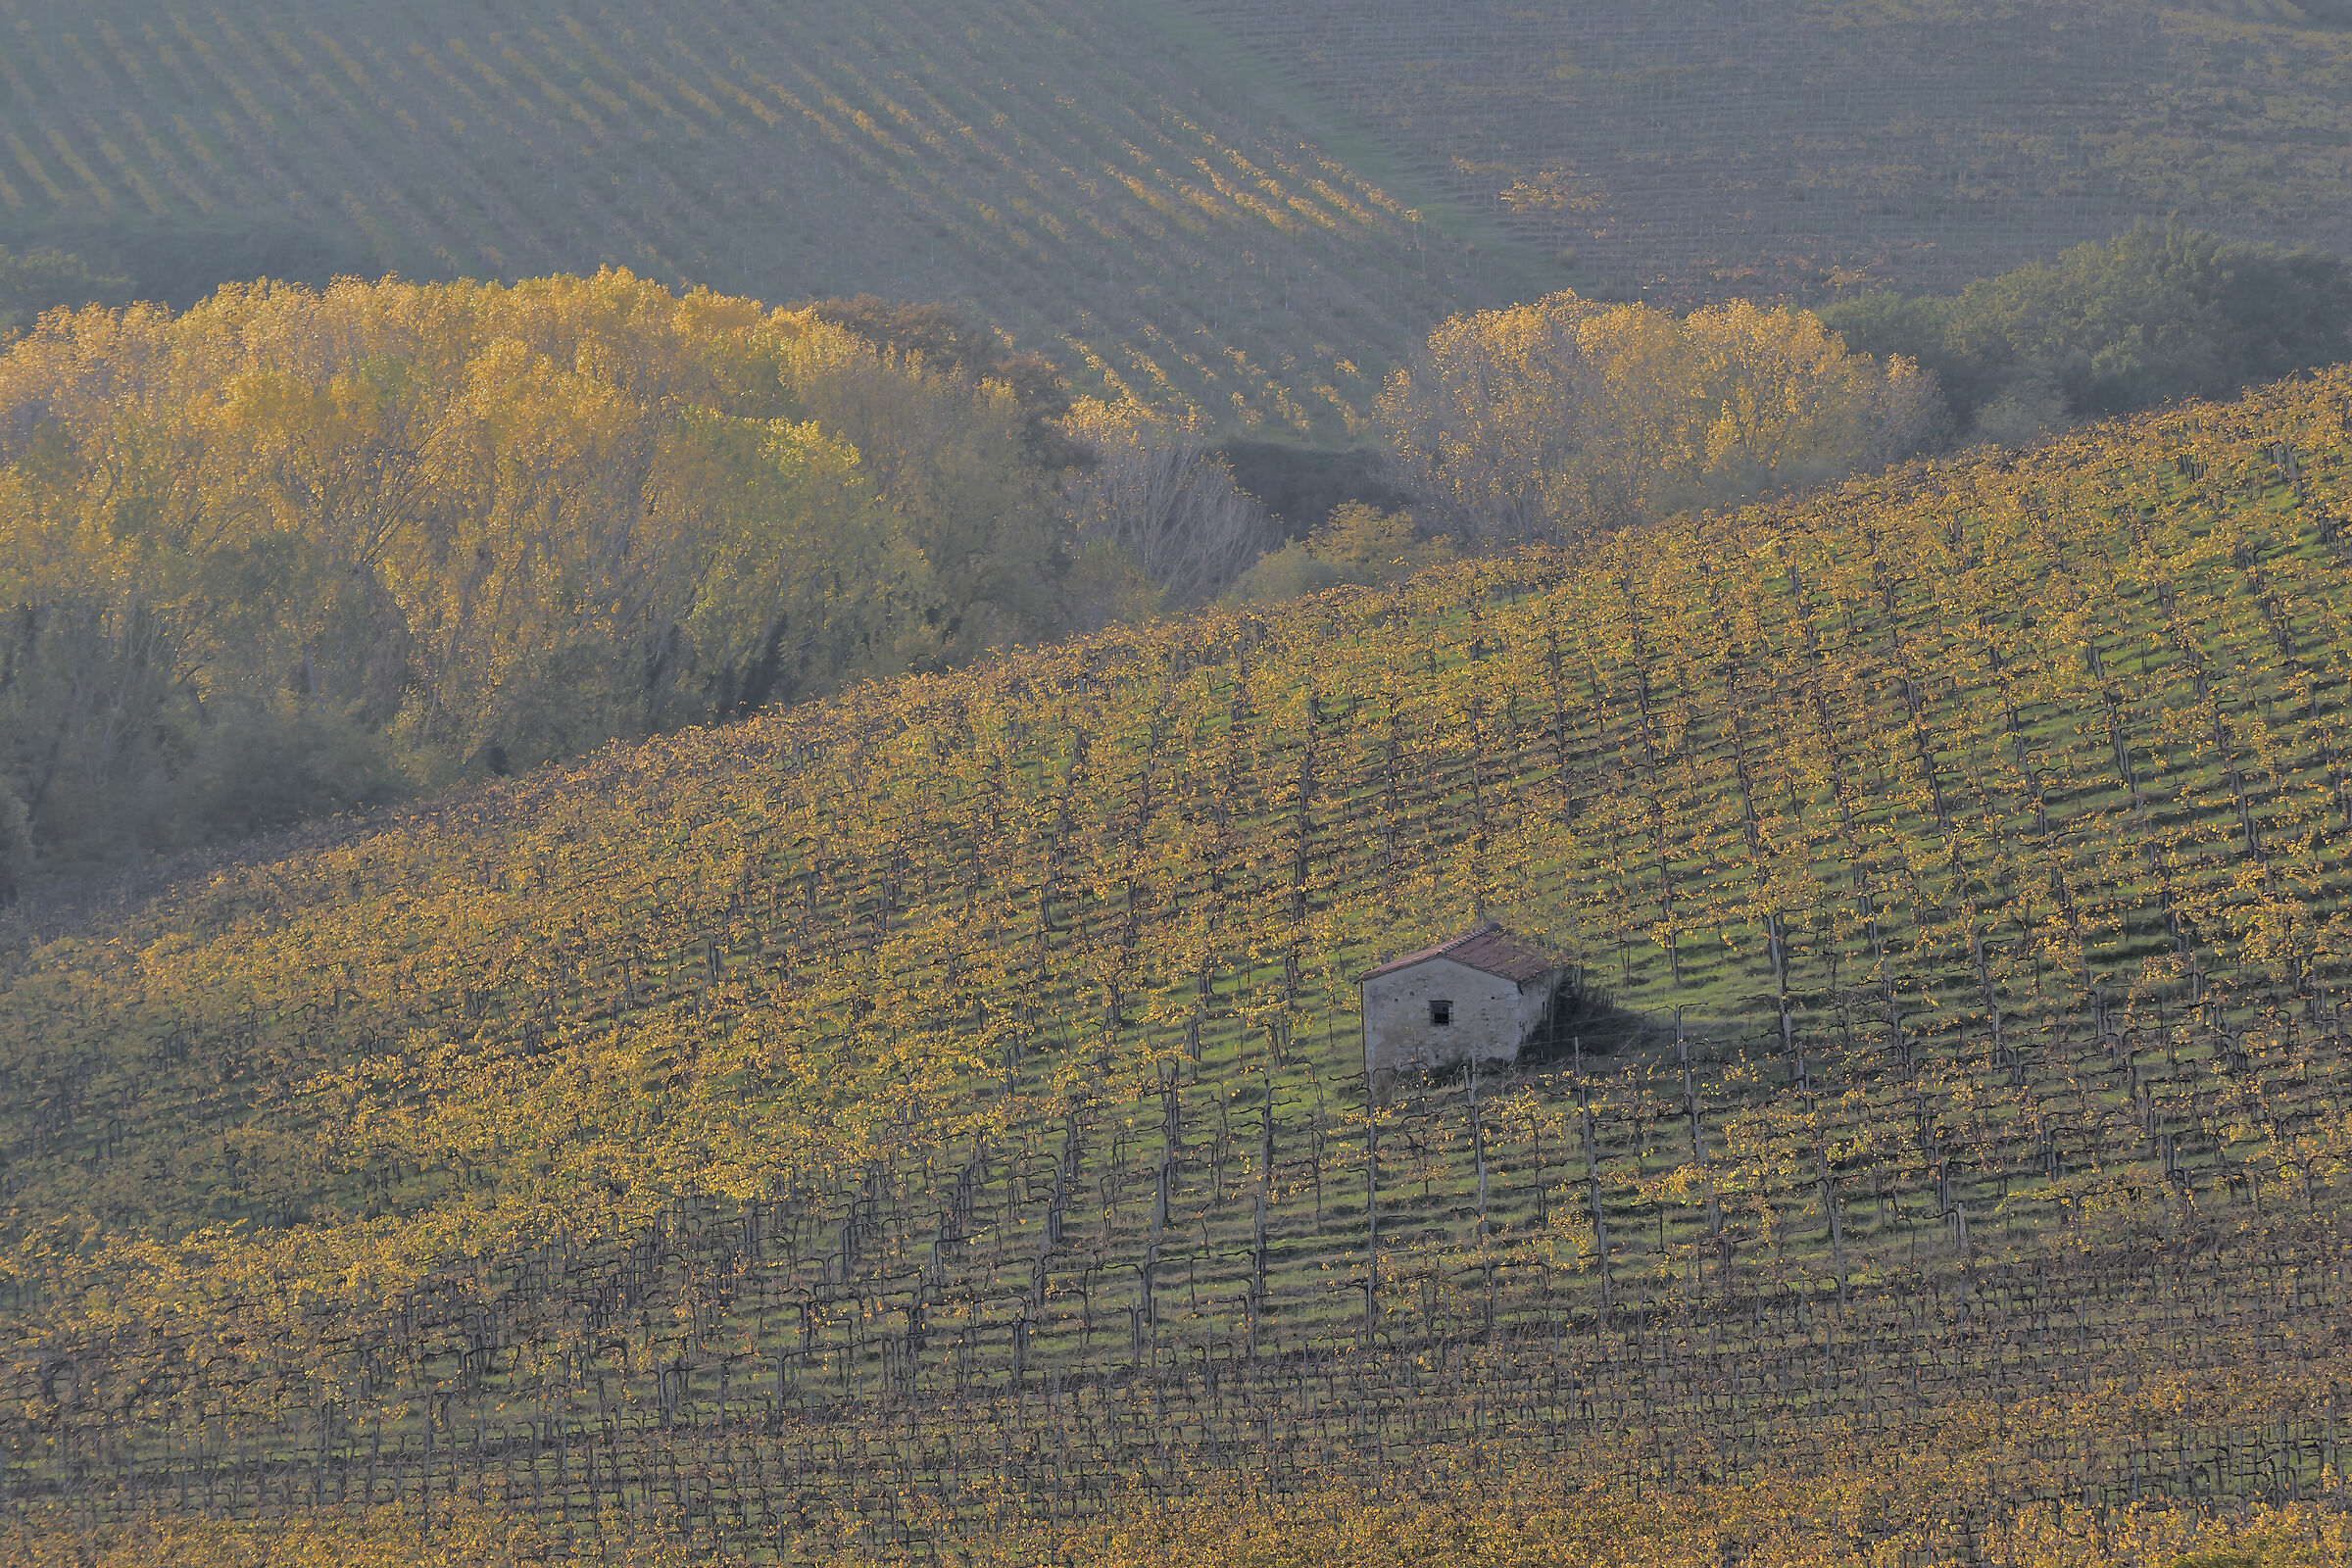 Tuscan vineyards November 2020...